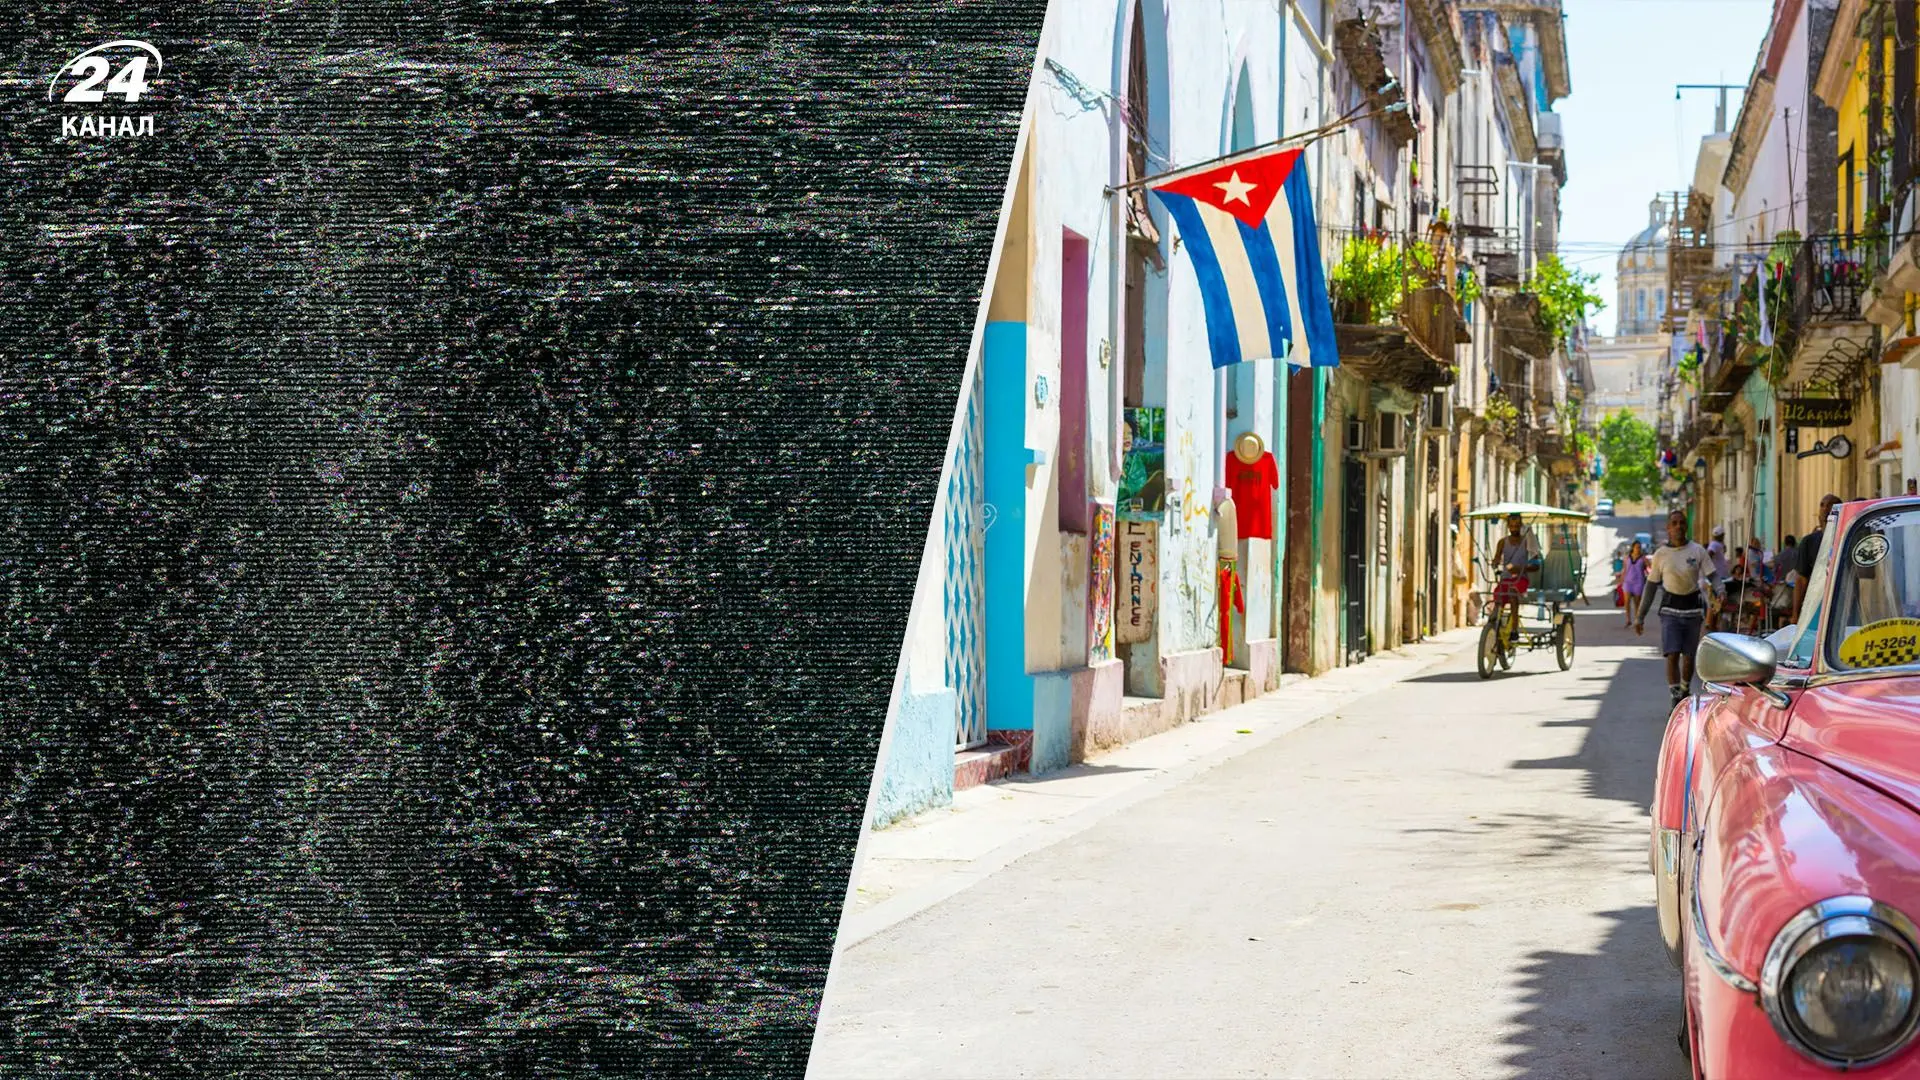 Гаванський синдром - це стан, що може виникнути у туристів, які відпочивають у Кубі, і проявляється нездужанням через споживання місцевої їжі чи води. Цей синдром може бути небезпечним через можливість розвитку серйозних хвороб, таких як гепатит або сальм